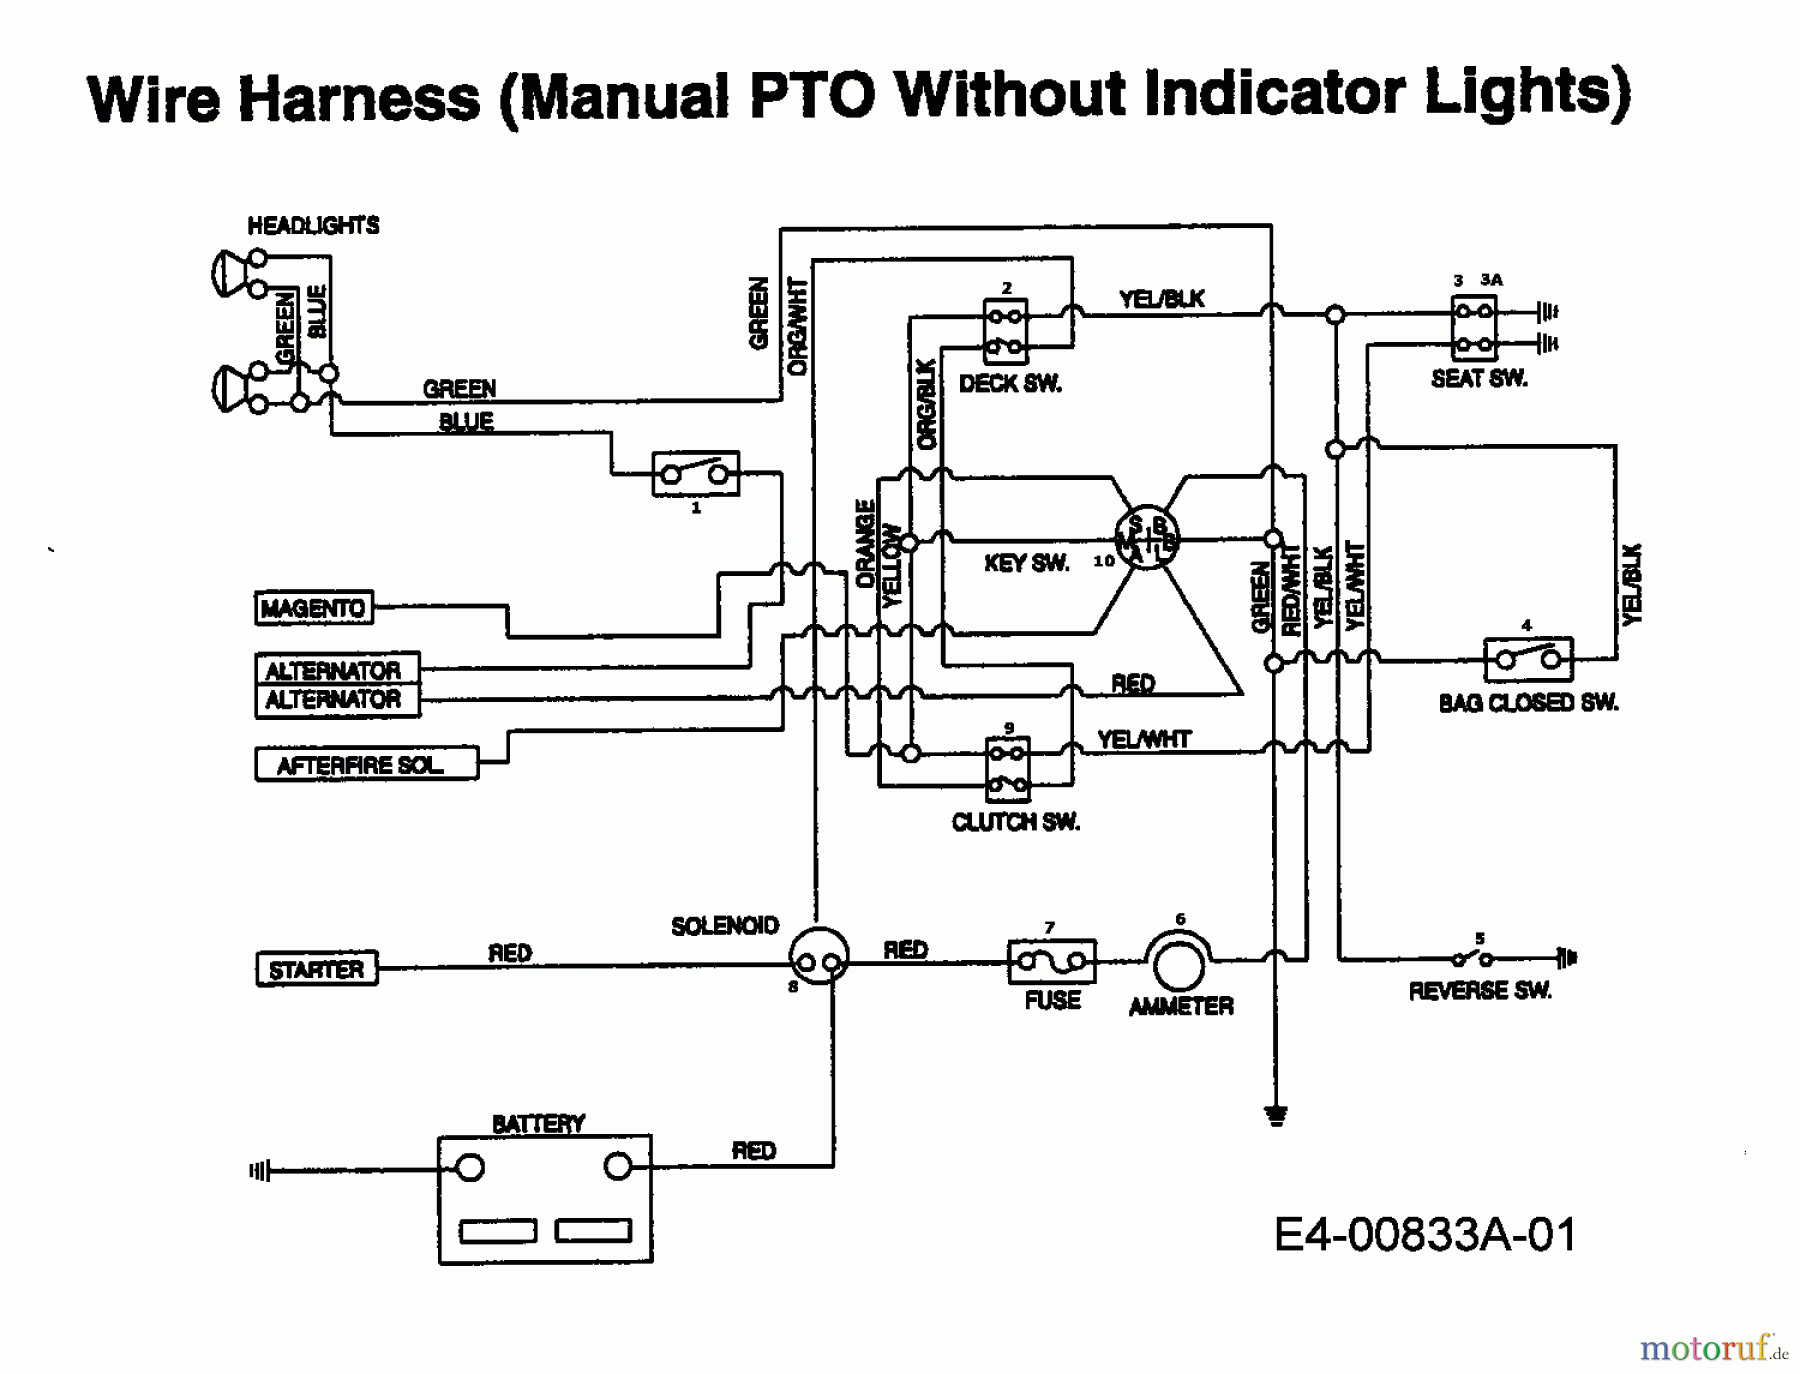  Edenparc Tracteurs de pelouse H 155102 13AD790N608  (1997) Plan électrique sans lampe de contrôle